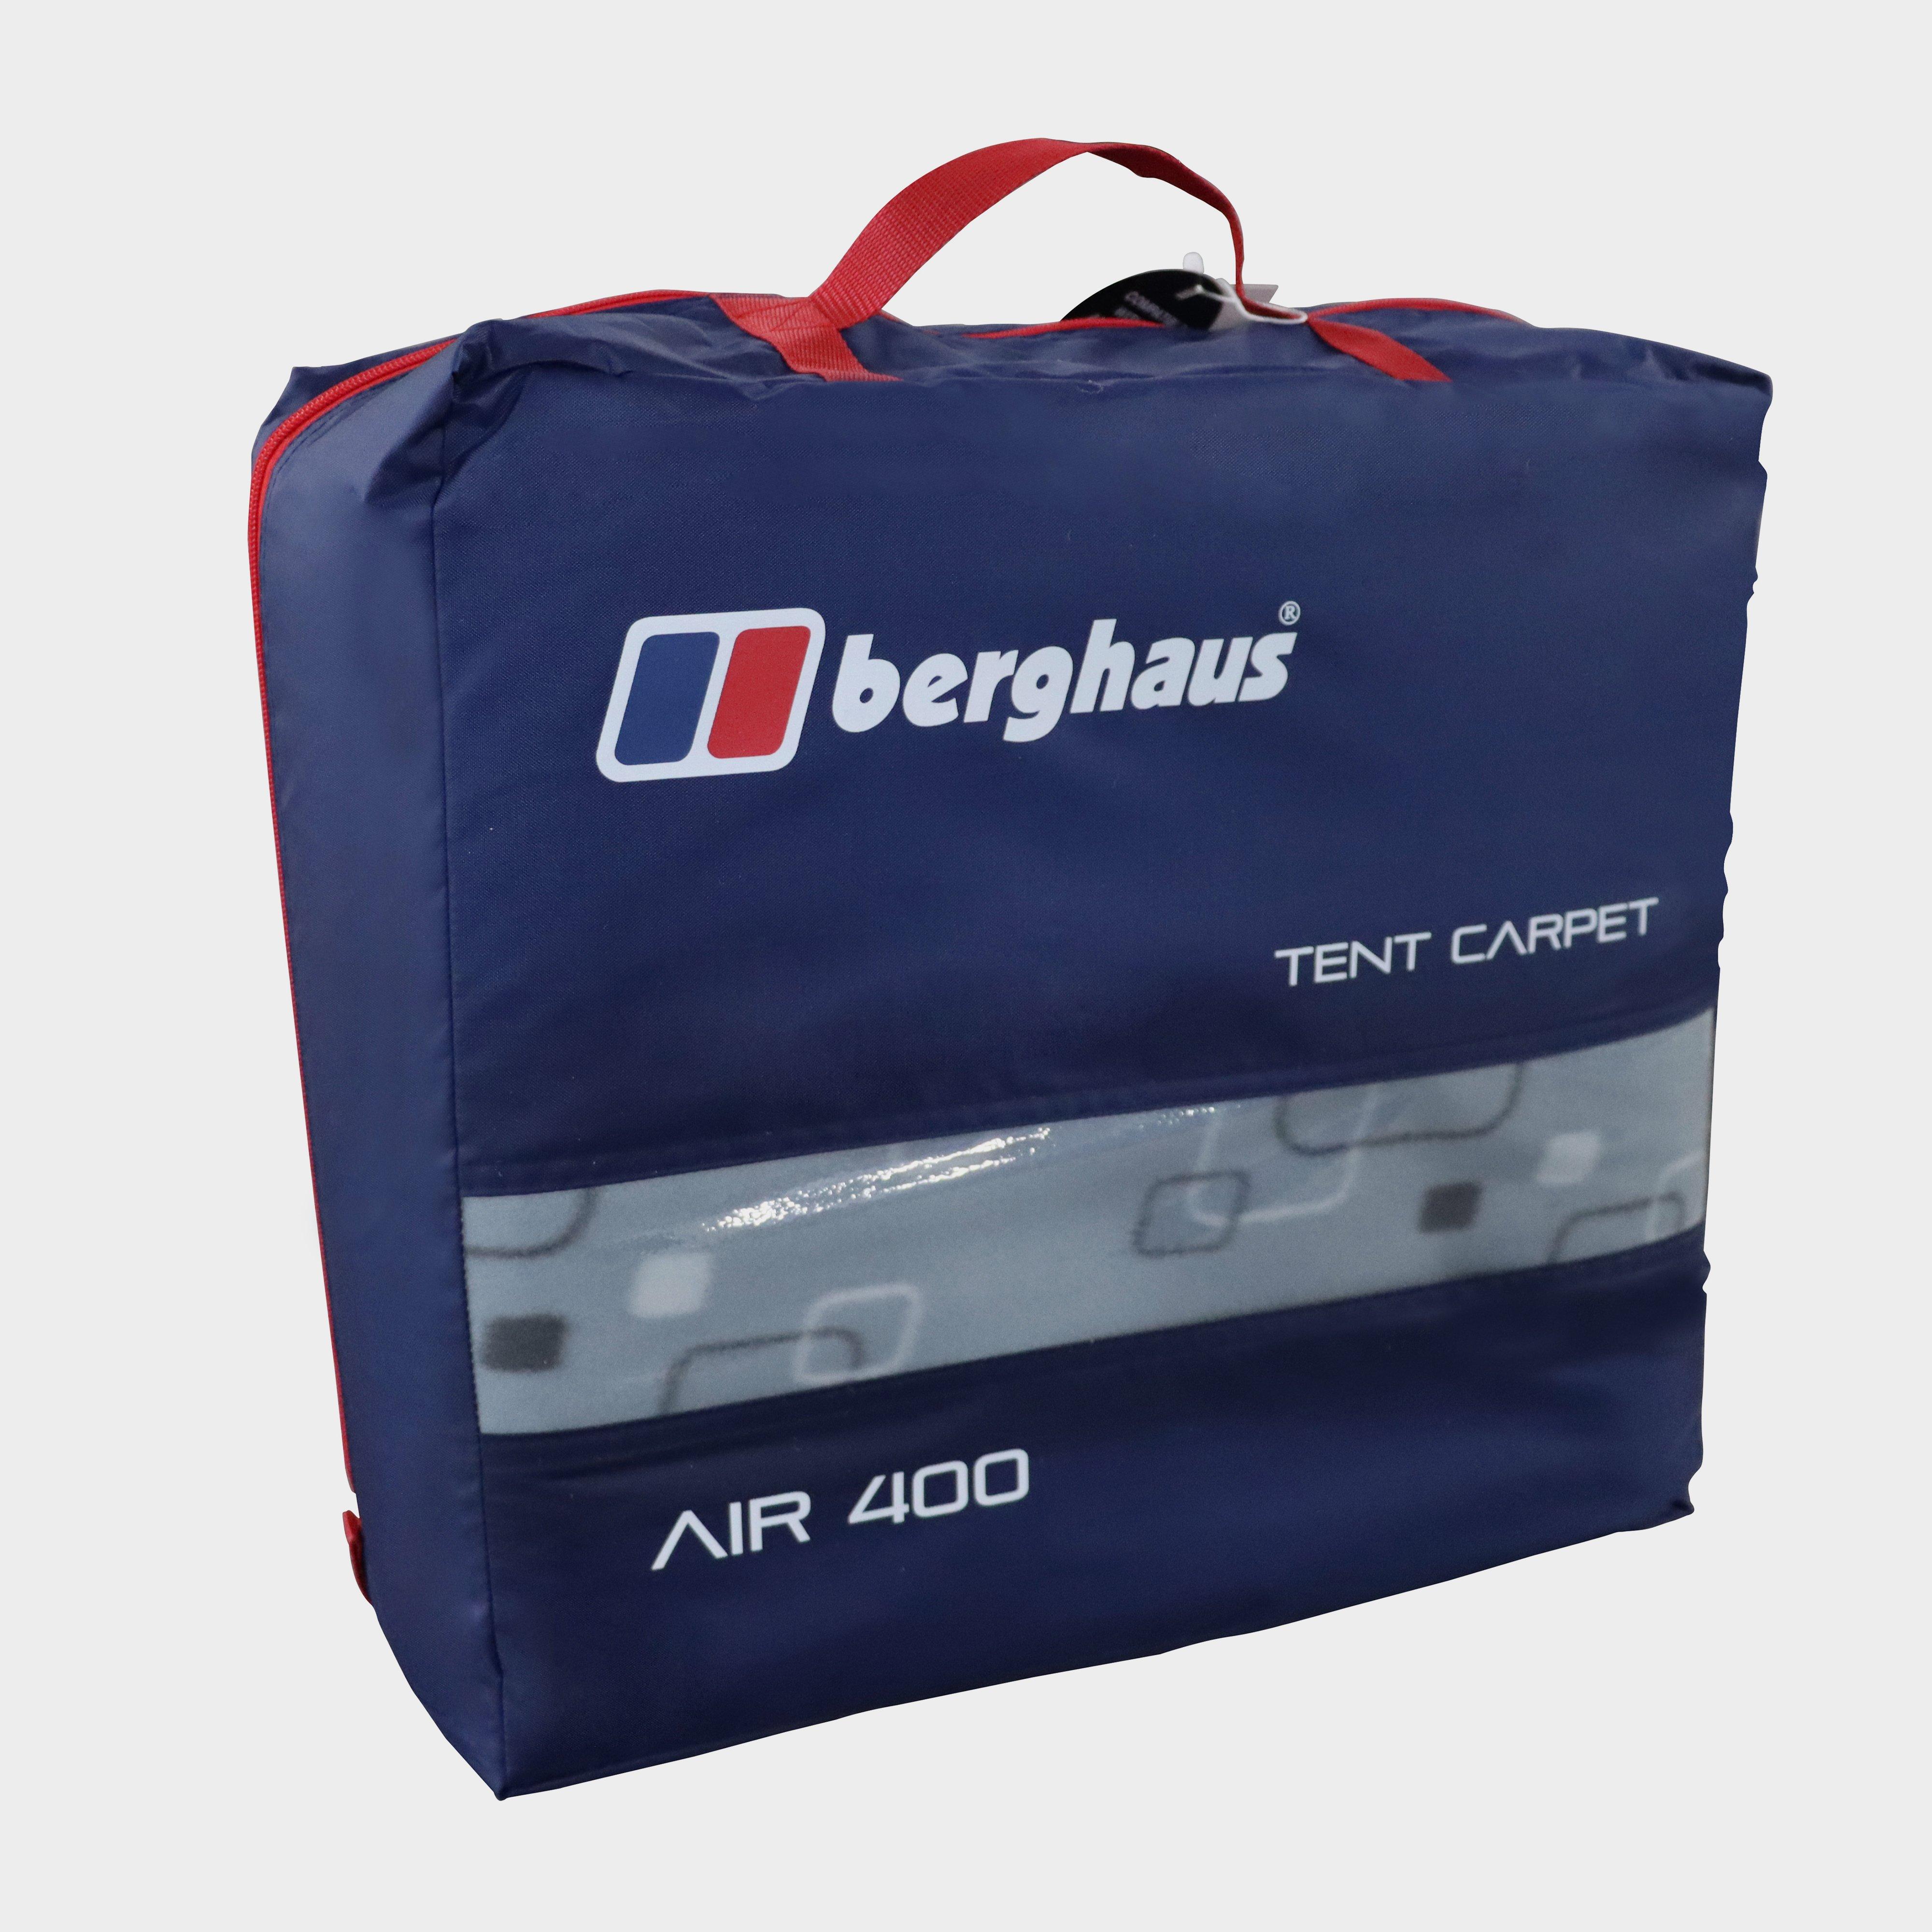  Berghaus Air 400/4 Tent Carpet, Black